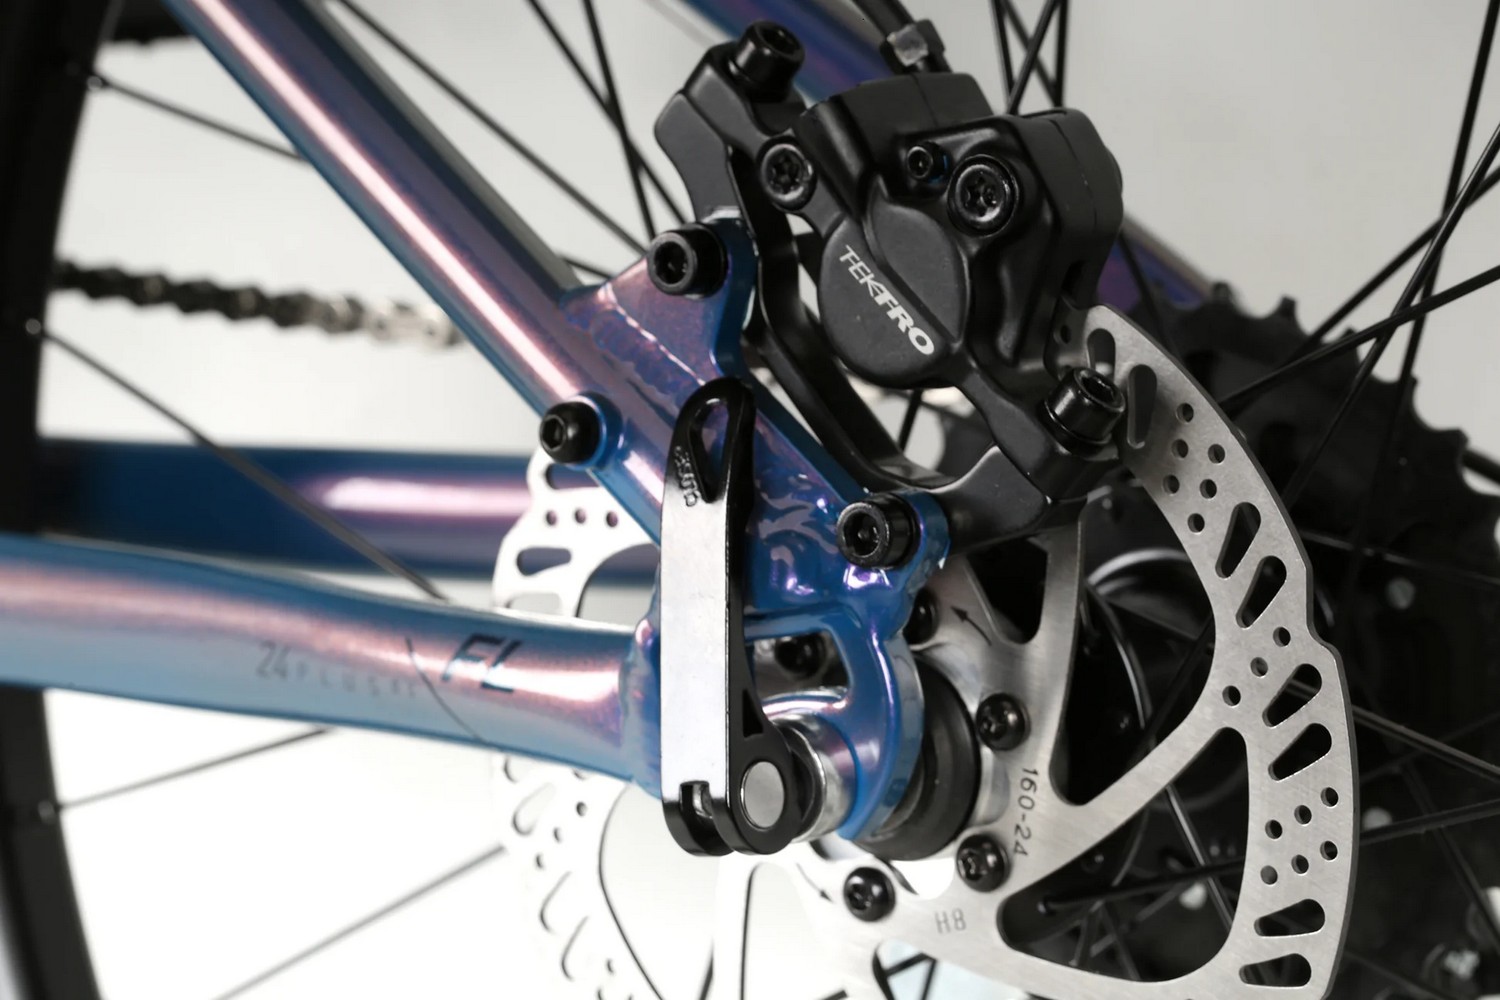 Подростковый велосипед Haro Flightline 24 Plus DS, год 2023, цвет Фиолетовый-Синий